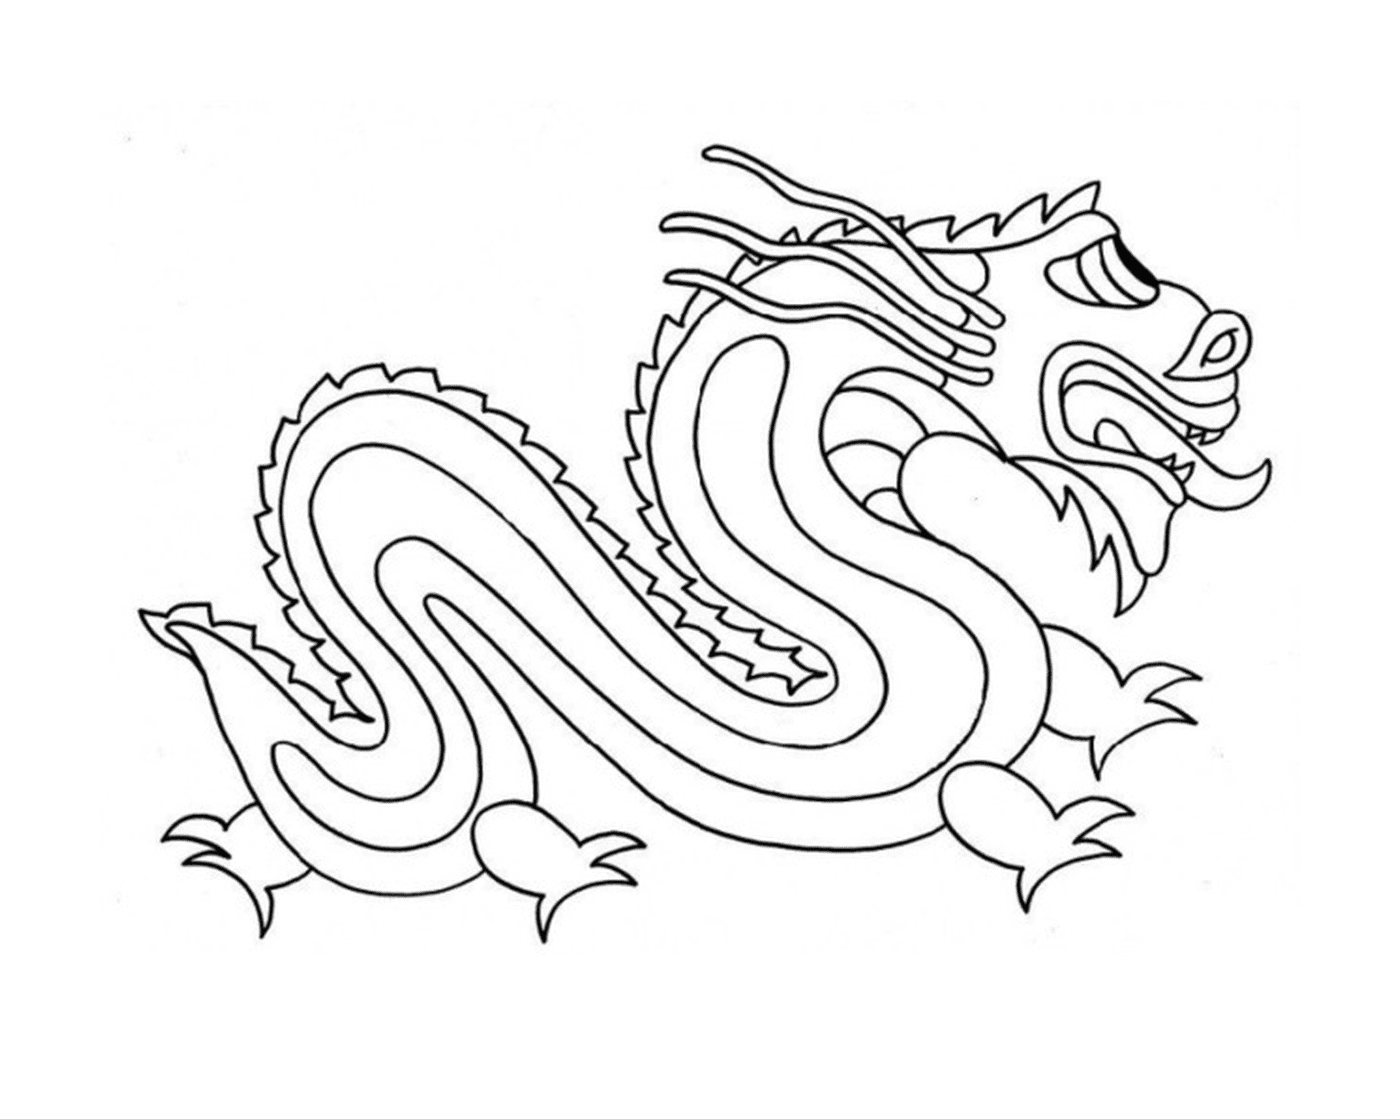  सरल तथा आसान चीनी ड्रैगन 